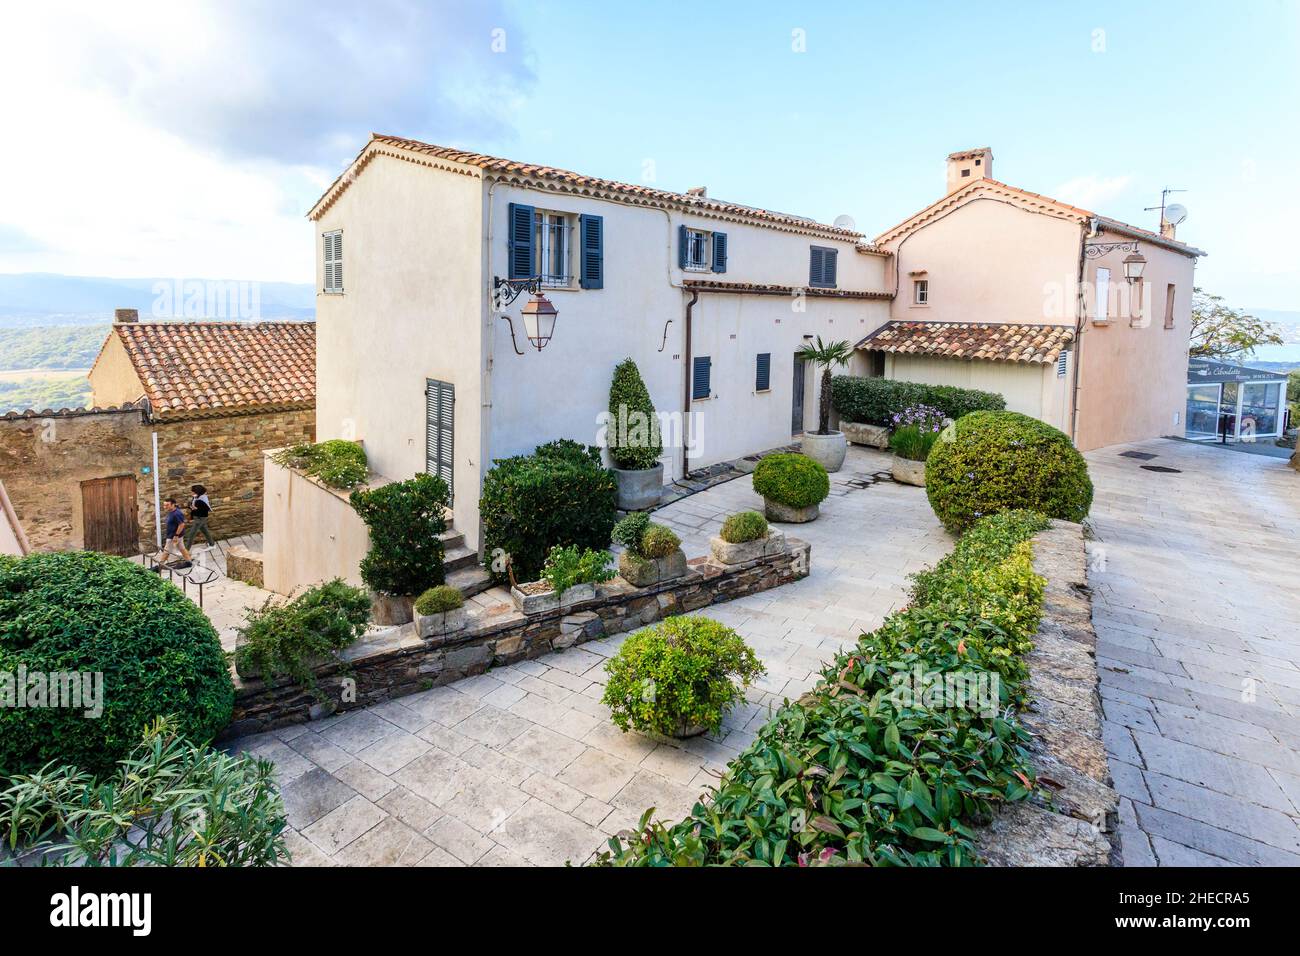 France, Var, Gulf of Saint Tropez, Gassin, labelled Les Plus Beaux Villages de France (The Most Beautiful Villages of France), street in the village, Stock Photo